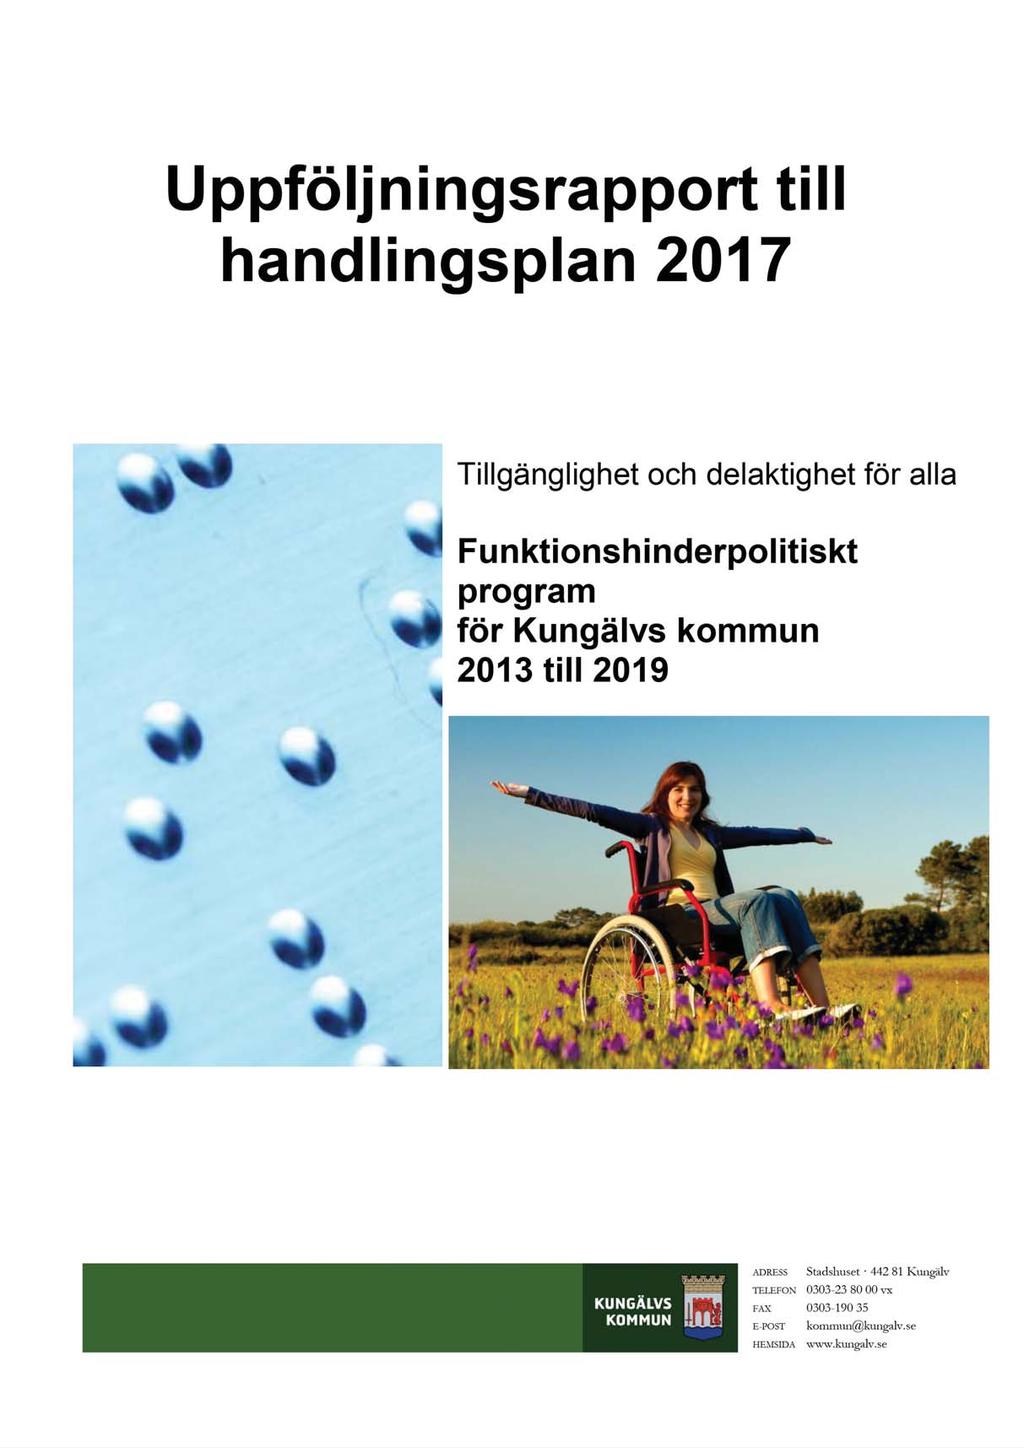 10/18 Uppföljningsrapport handlingsplan 2017 - KS2012/1521-51 Uppföljningsrapport